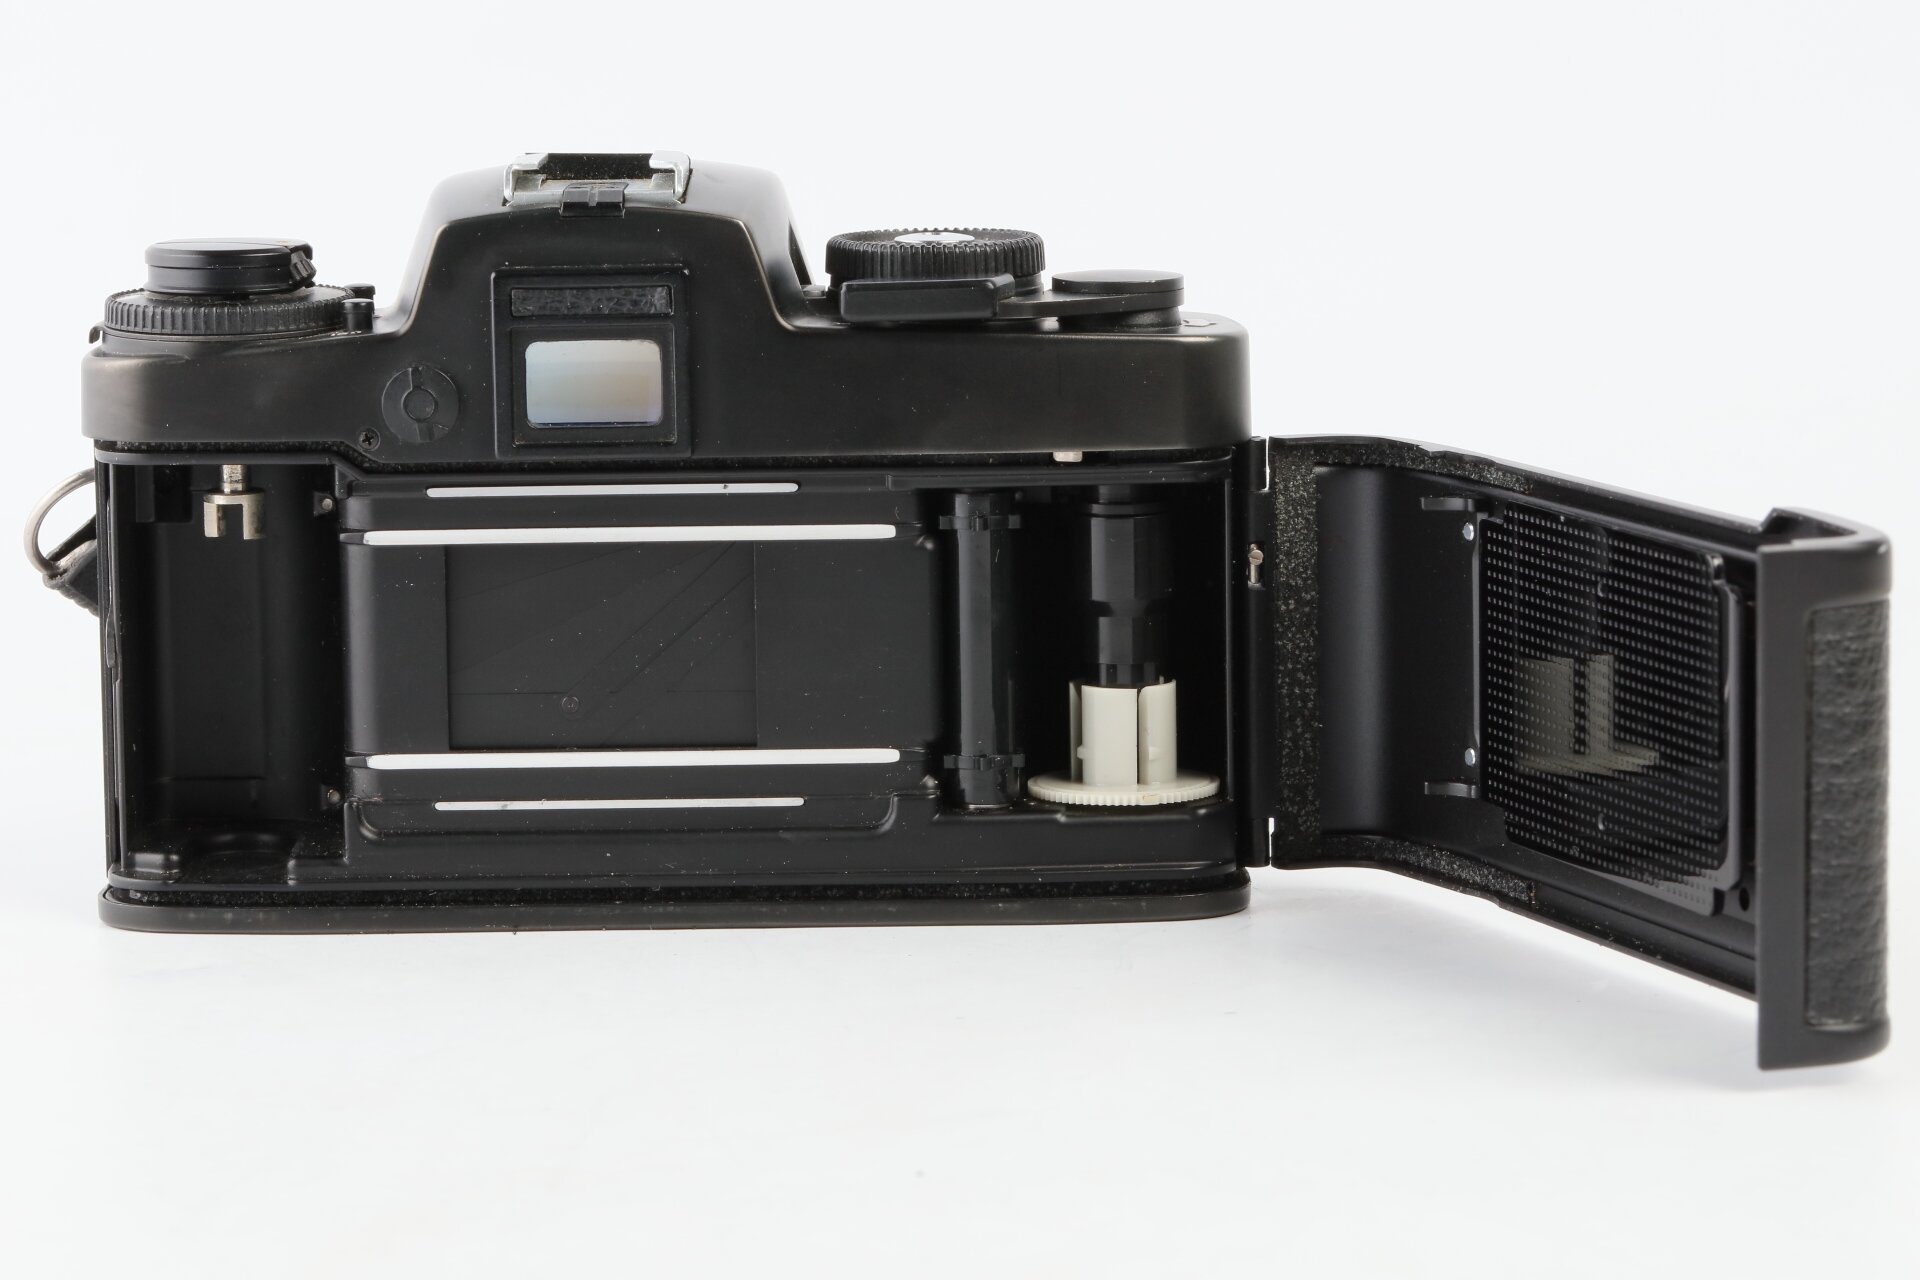 Leica R4 Gehäuse schwarz 10043